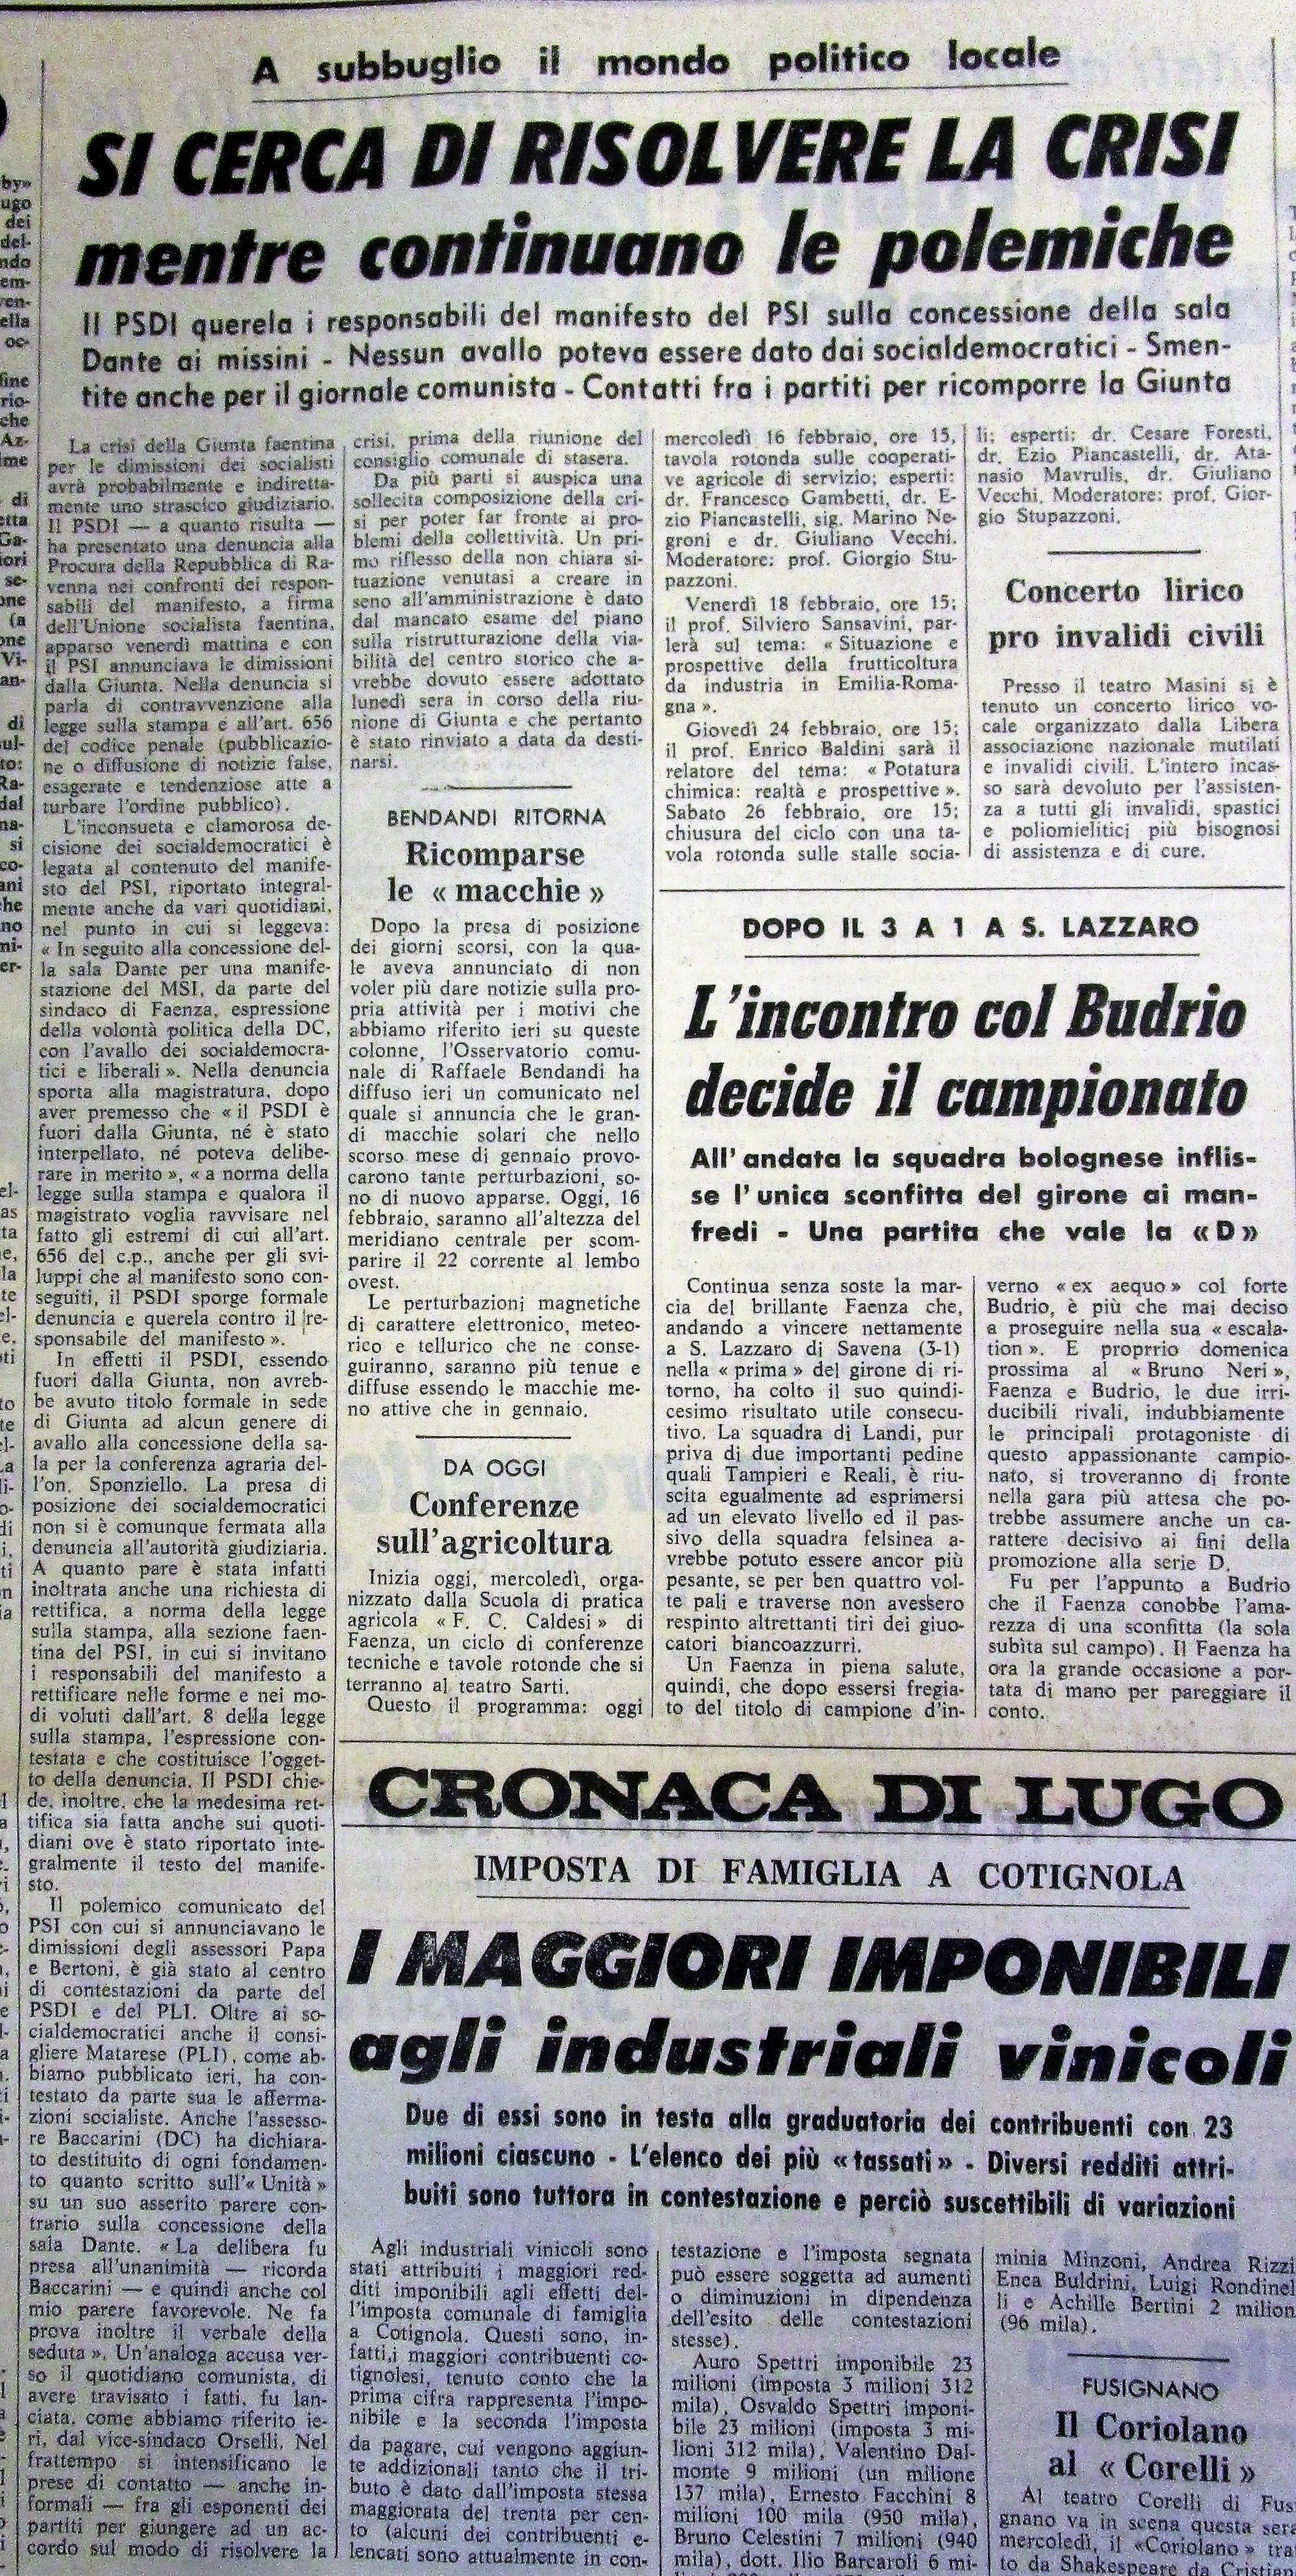 “Il Resto del Carlino-Faenza” 11 febbraio 1972, articolo sulla crisi della Giunta di centrosinistra in seguito alla concessione di una sala comunale per una iniziativa dell'MSI sull'agricoltura